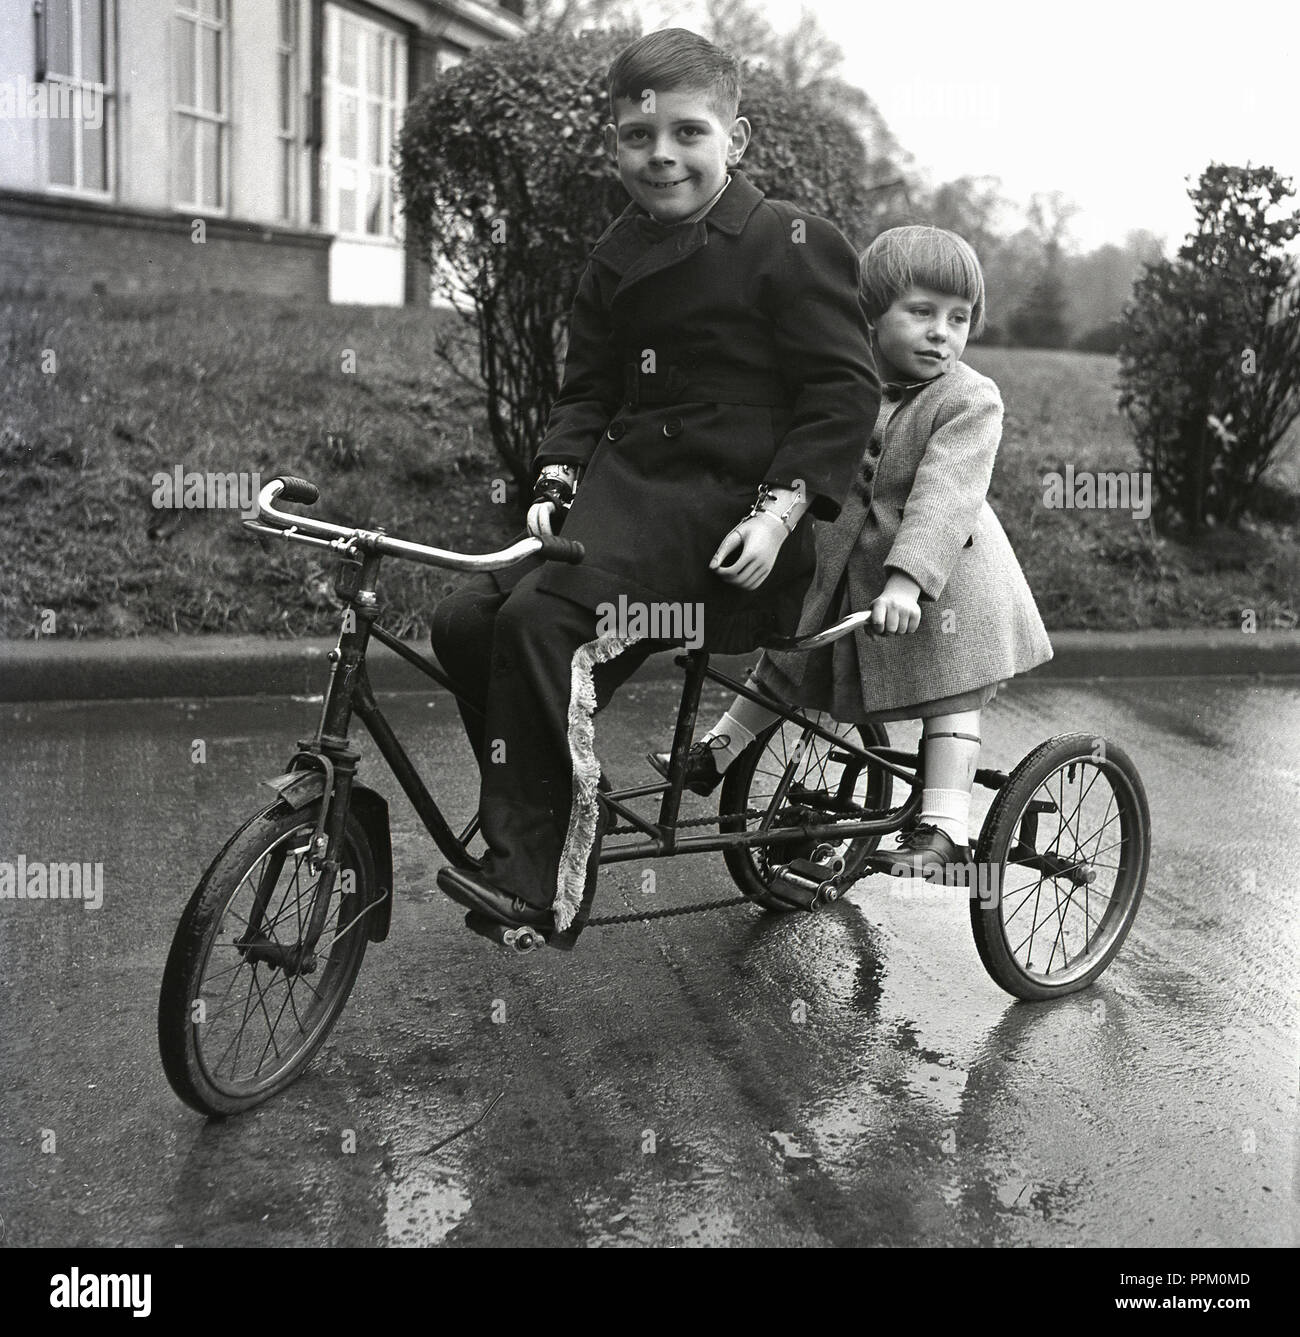 1950s, historique, deux jeunes enfants handicapés physiquement reçoivent de l'air frais lorsqu'ils s'assoient ensemble sur un tricycle en tandem à l'extérieur de leur hôpital, en Angleterre, au Royaume-Uni. Banque D'Images